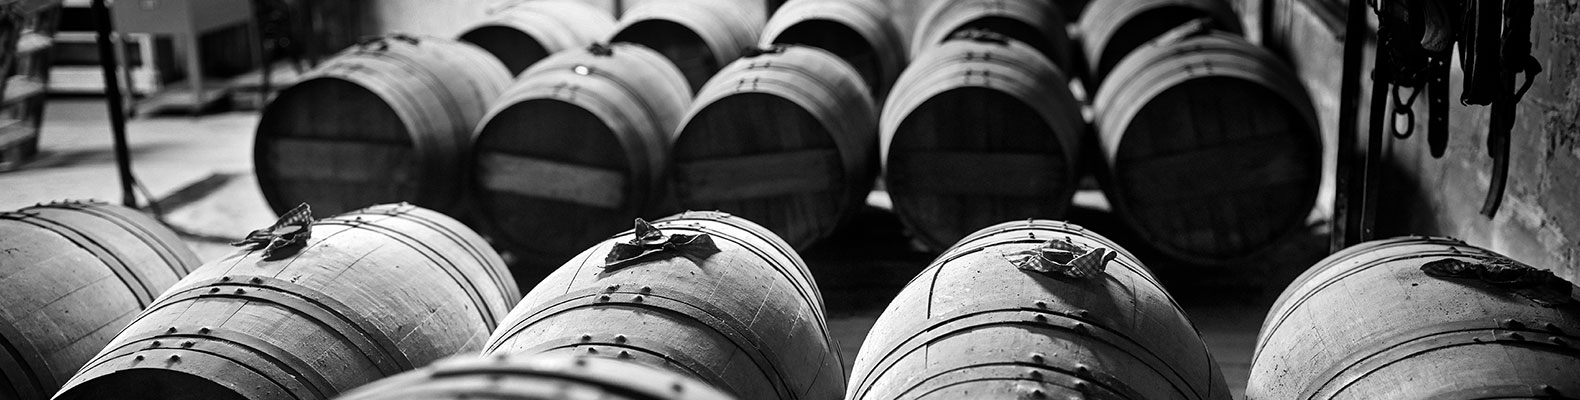 2 fût chêne barrique rancio solera vignobles et découvertes vignerons indépendants Rivesaltes Côtes du Roussillon Muscat de Rivesaltes